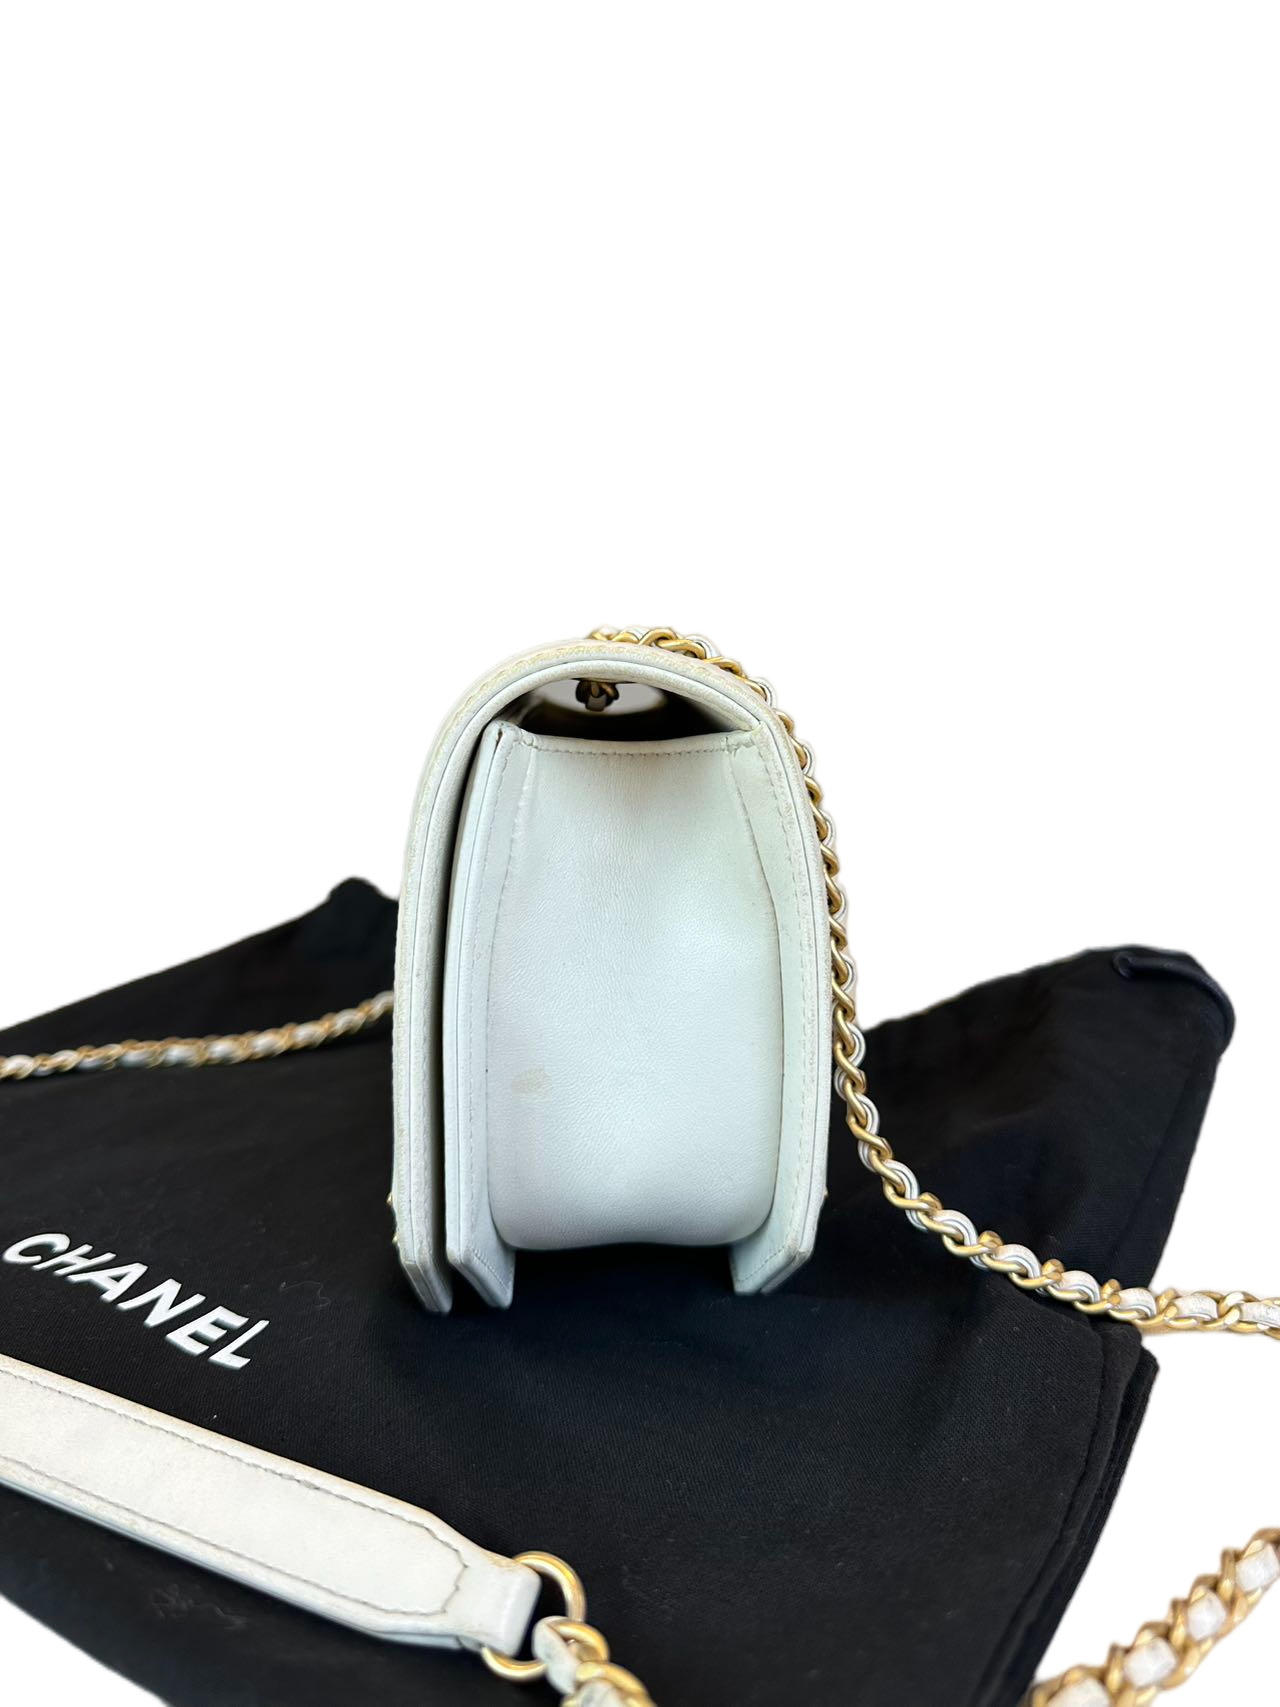 Preloved CHANEL White Leather Shoulder Bag Crossbody